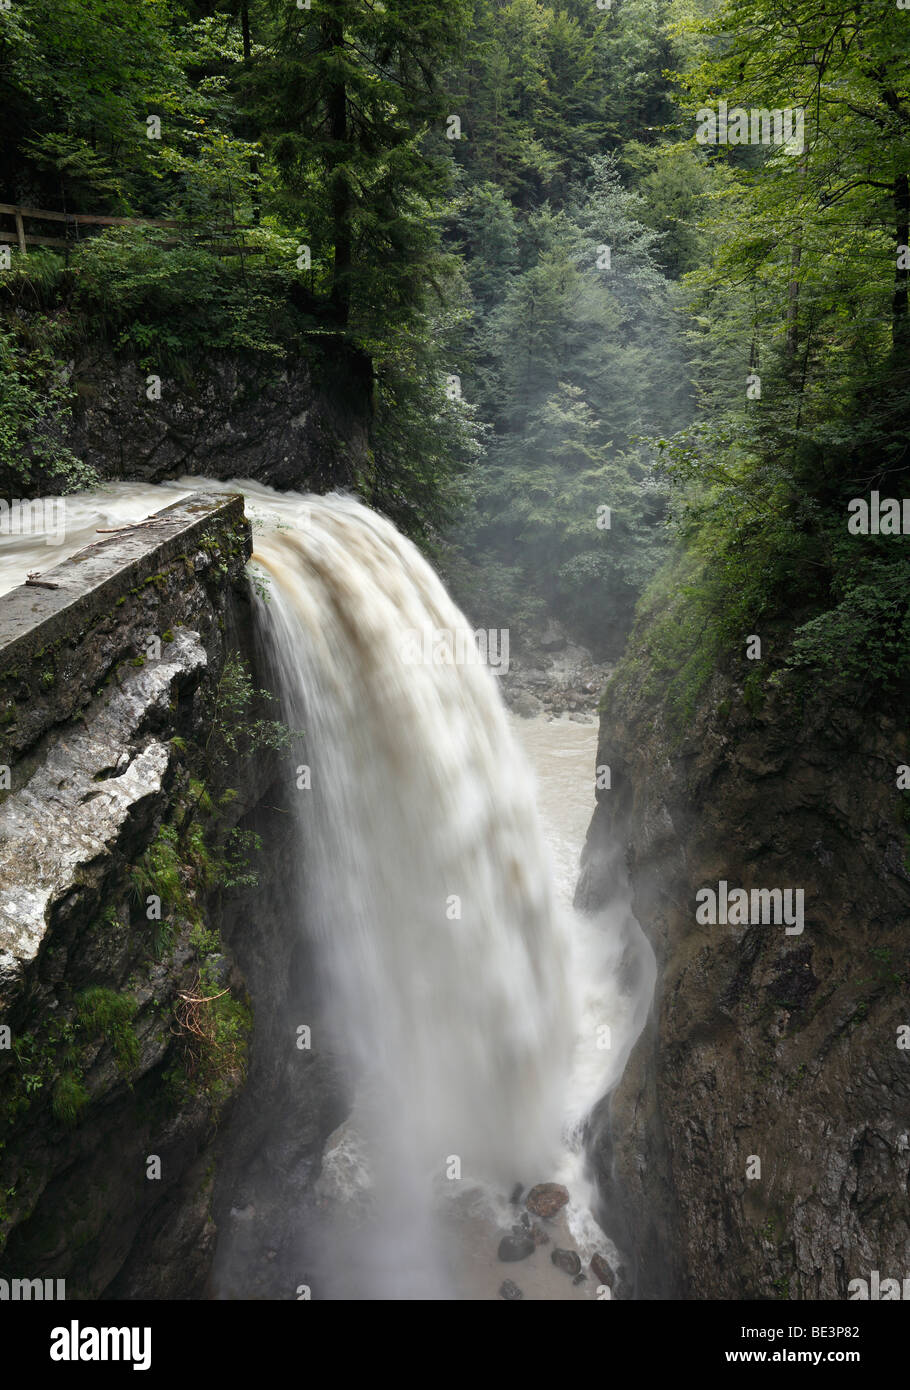 Waterfall in Rappenlochschlucht gorge, Dornbirn, Bregenz Forest, Vorarlberg, Austria, Europe Stock Photo